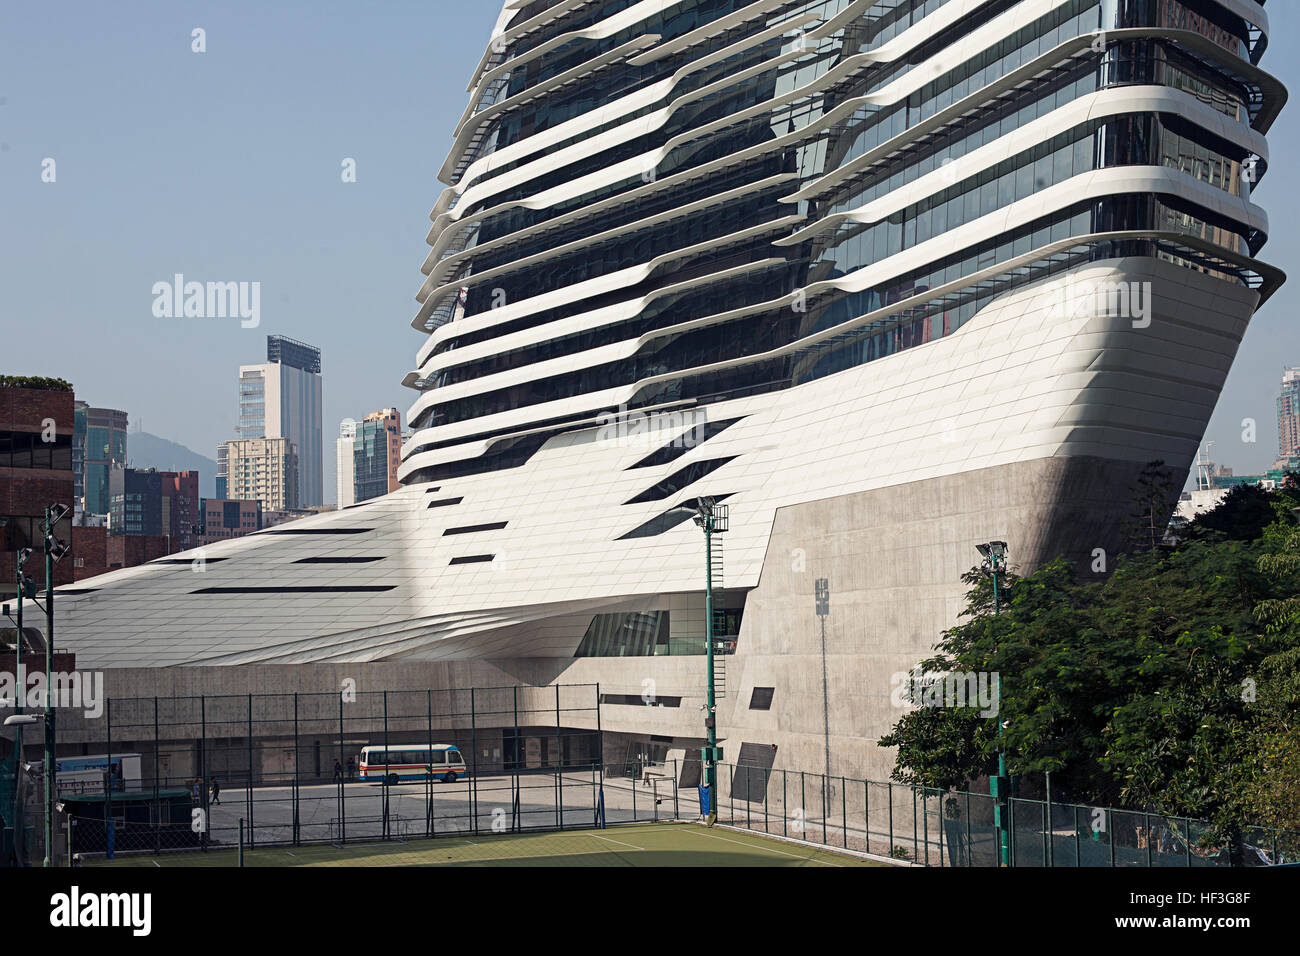 Hong Kong, China - November 06, 2014: Modern University Building by Zaha Hadid Architects Stock Photo